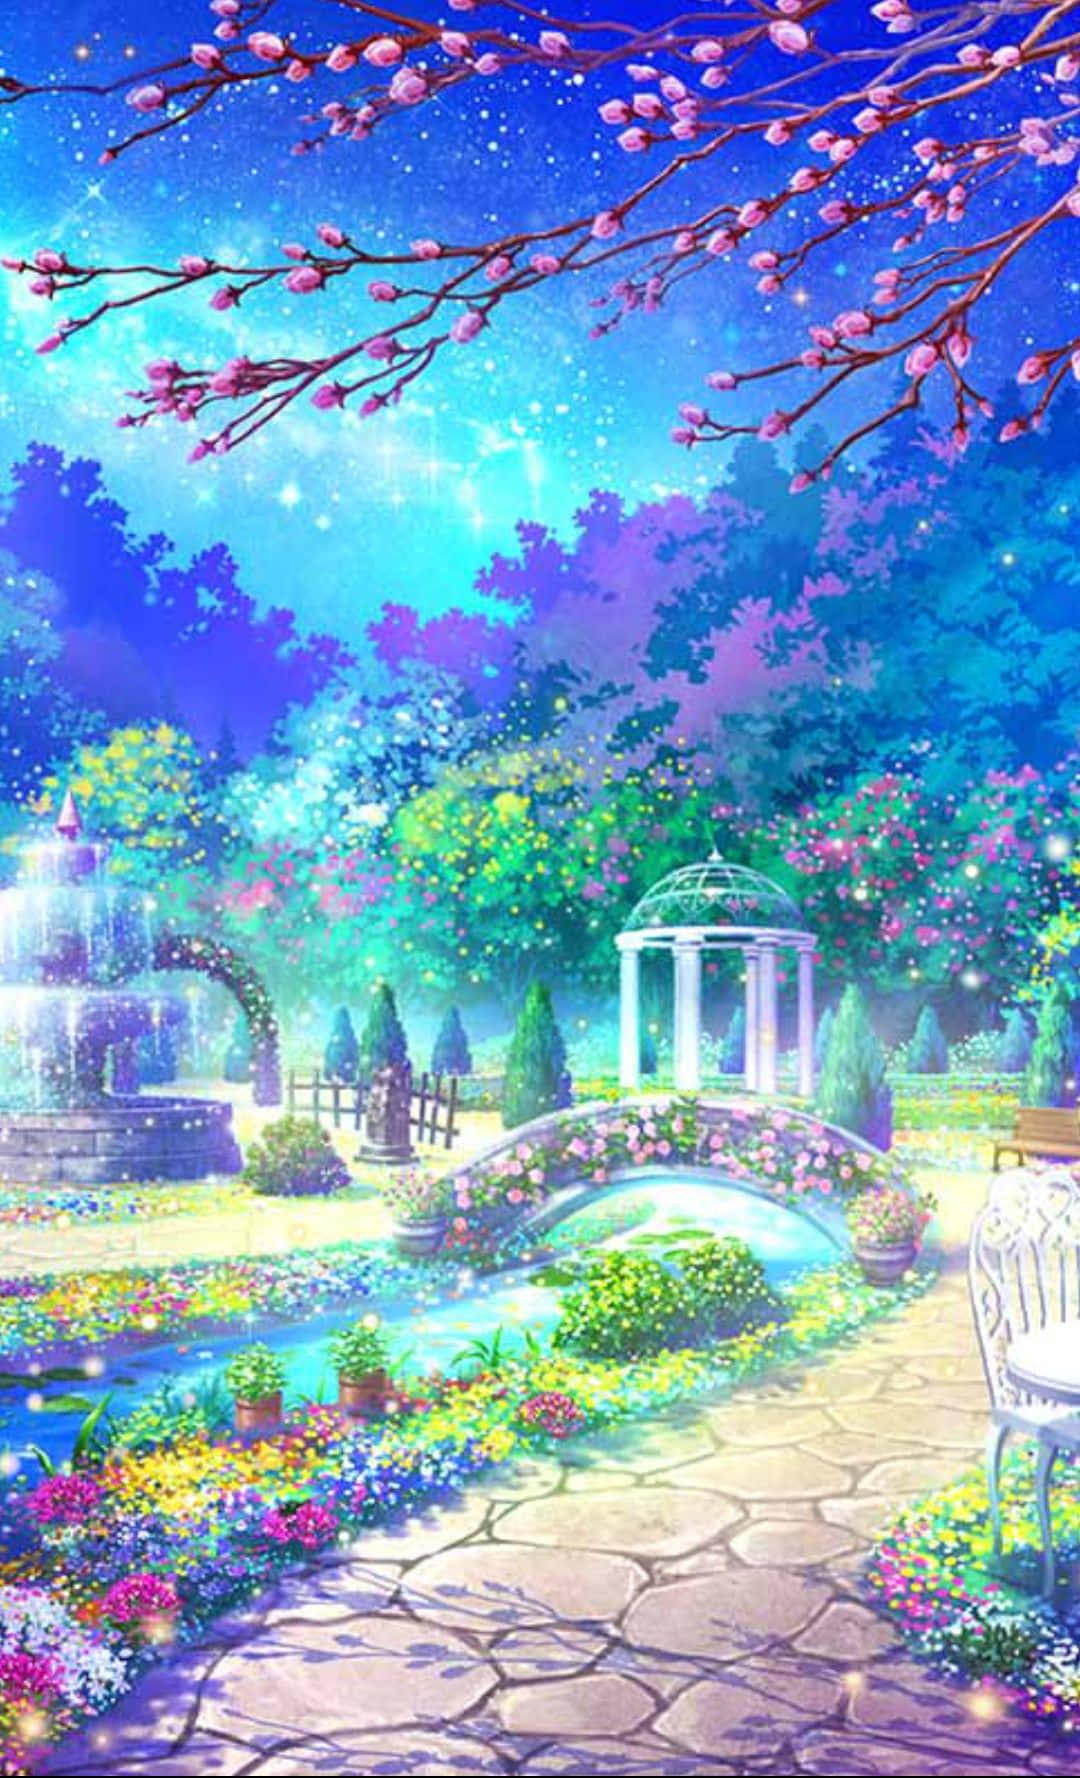 Cute Anime Backgrounds Sale - www.illva.com 1695532875